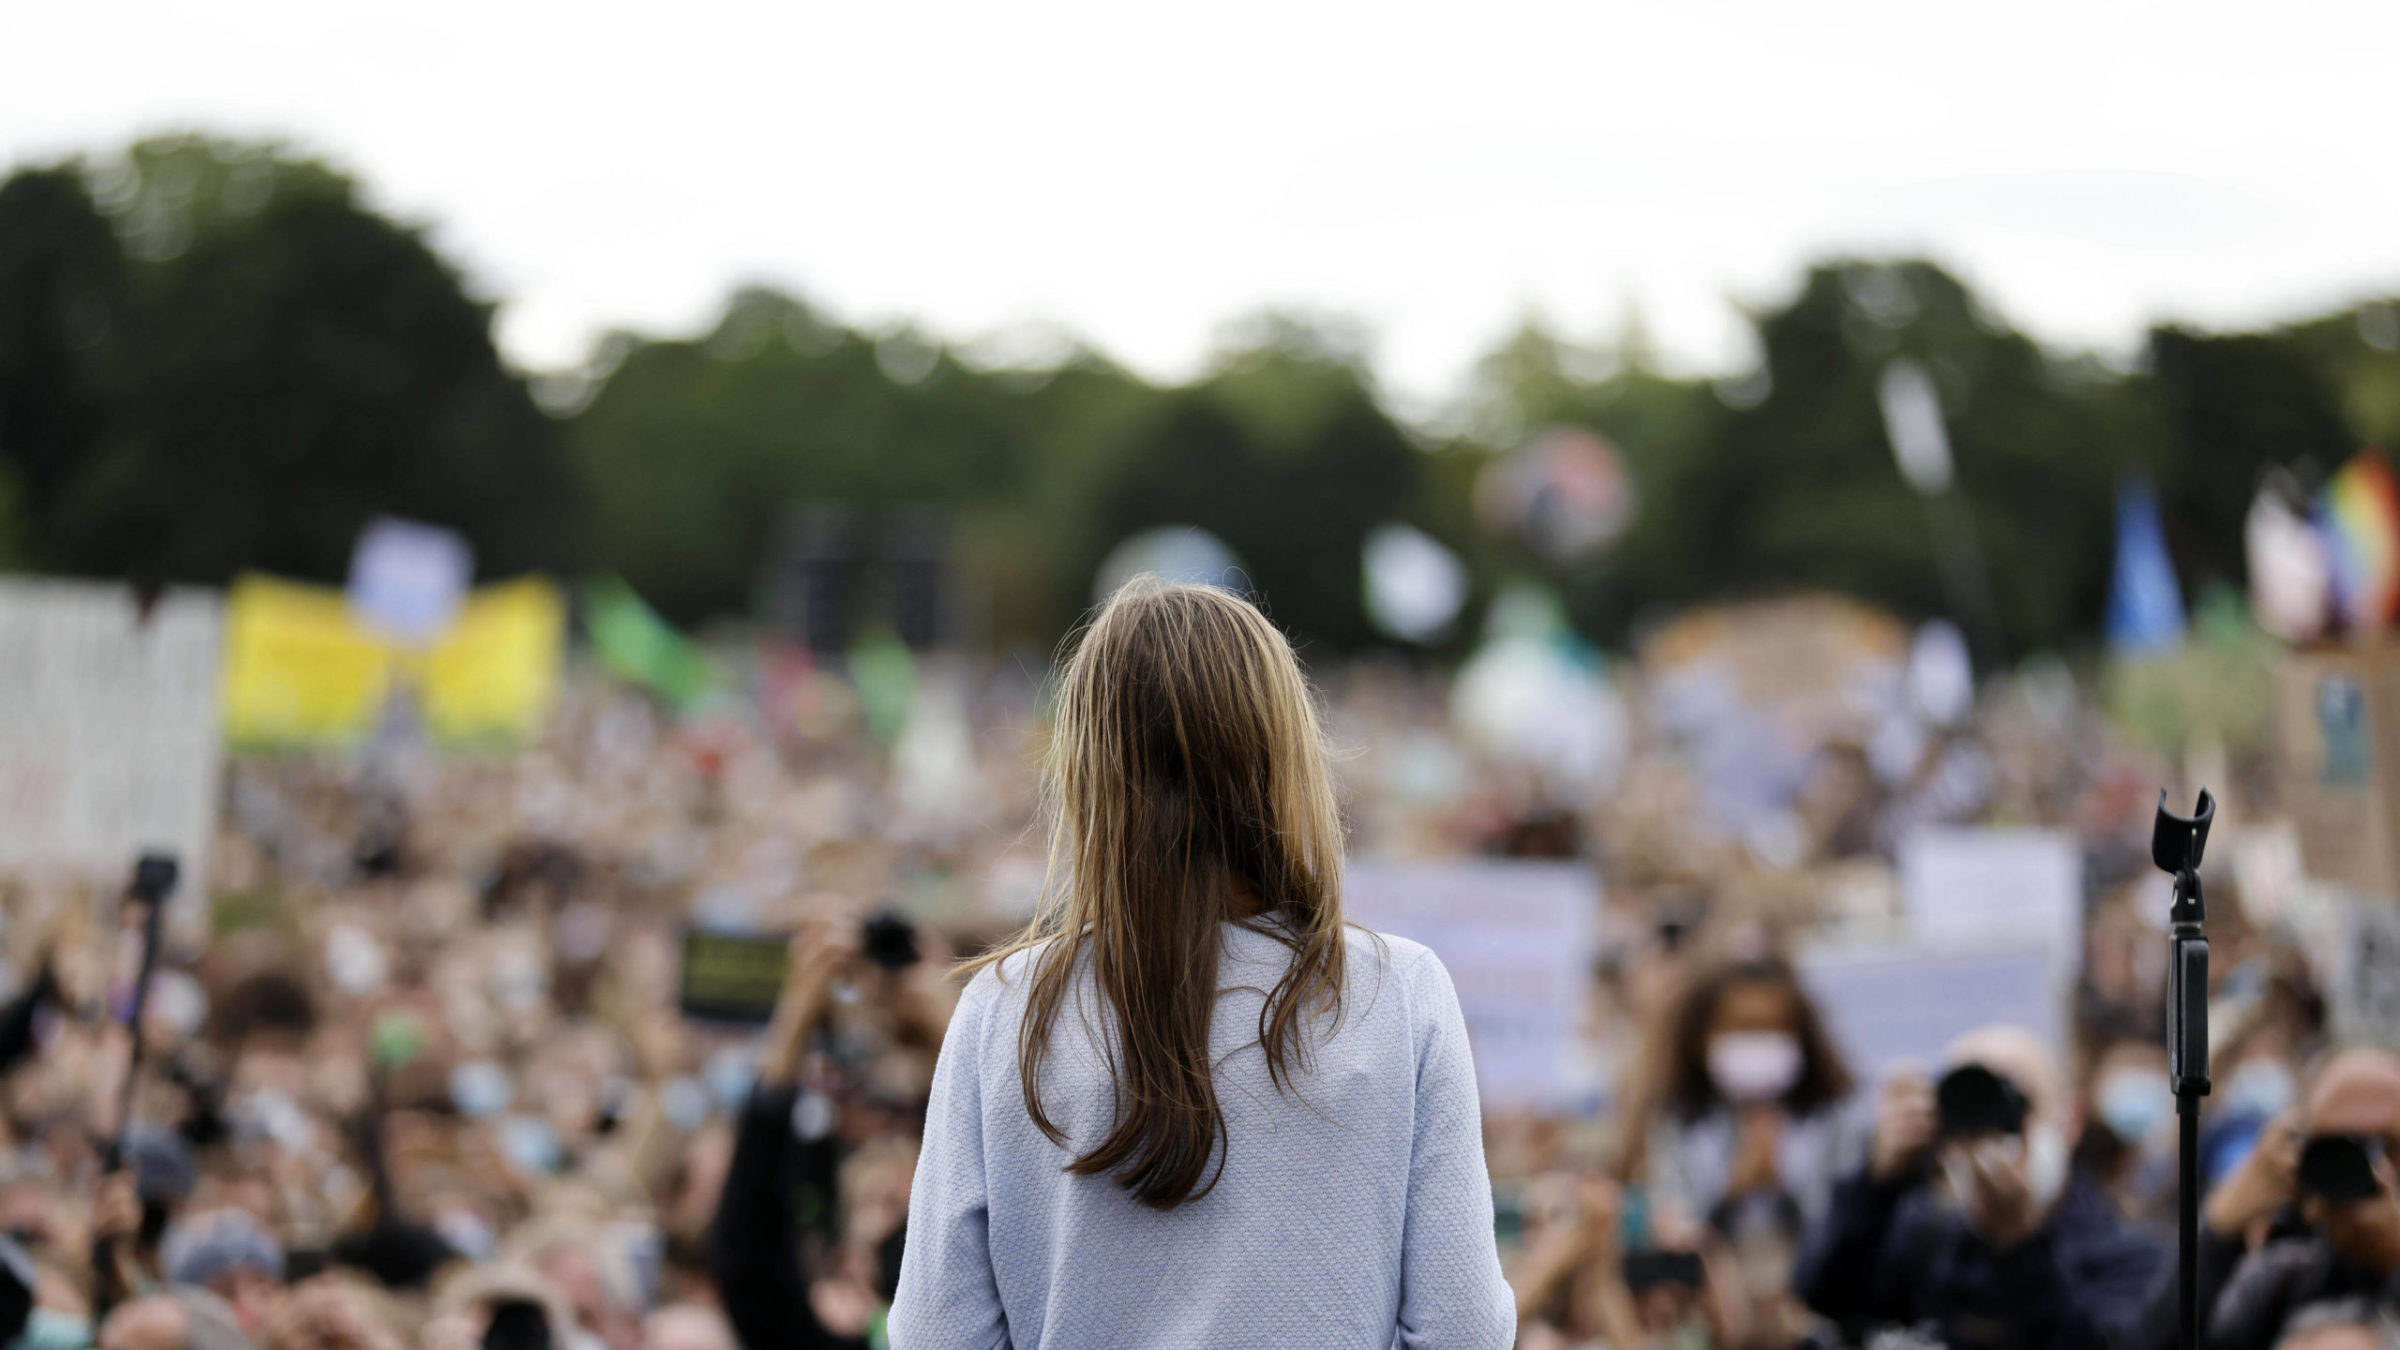 Die schwedische Klimaaktivistin Greta Thunberg steht in Berlin vor einer Menschenmenge., Mit ihrem Schulstreik fürs Klima hat sie eine internationale Protestwelle ausgelöst, auch in Deutschland. Ihr Protest hat die Bewegung Fridays for Future begründet.